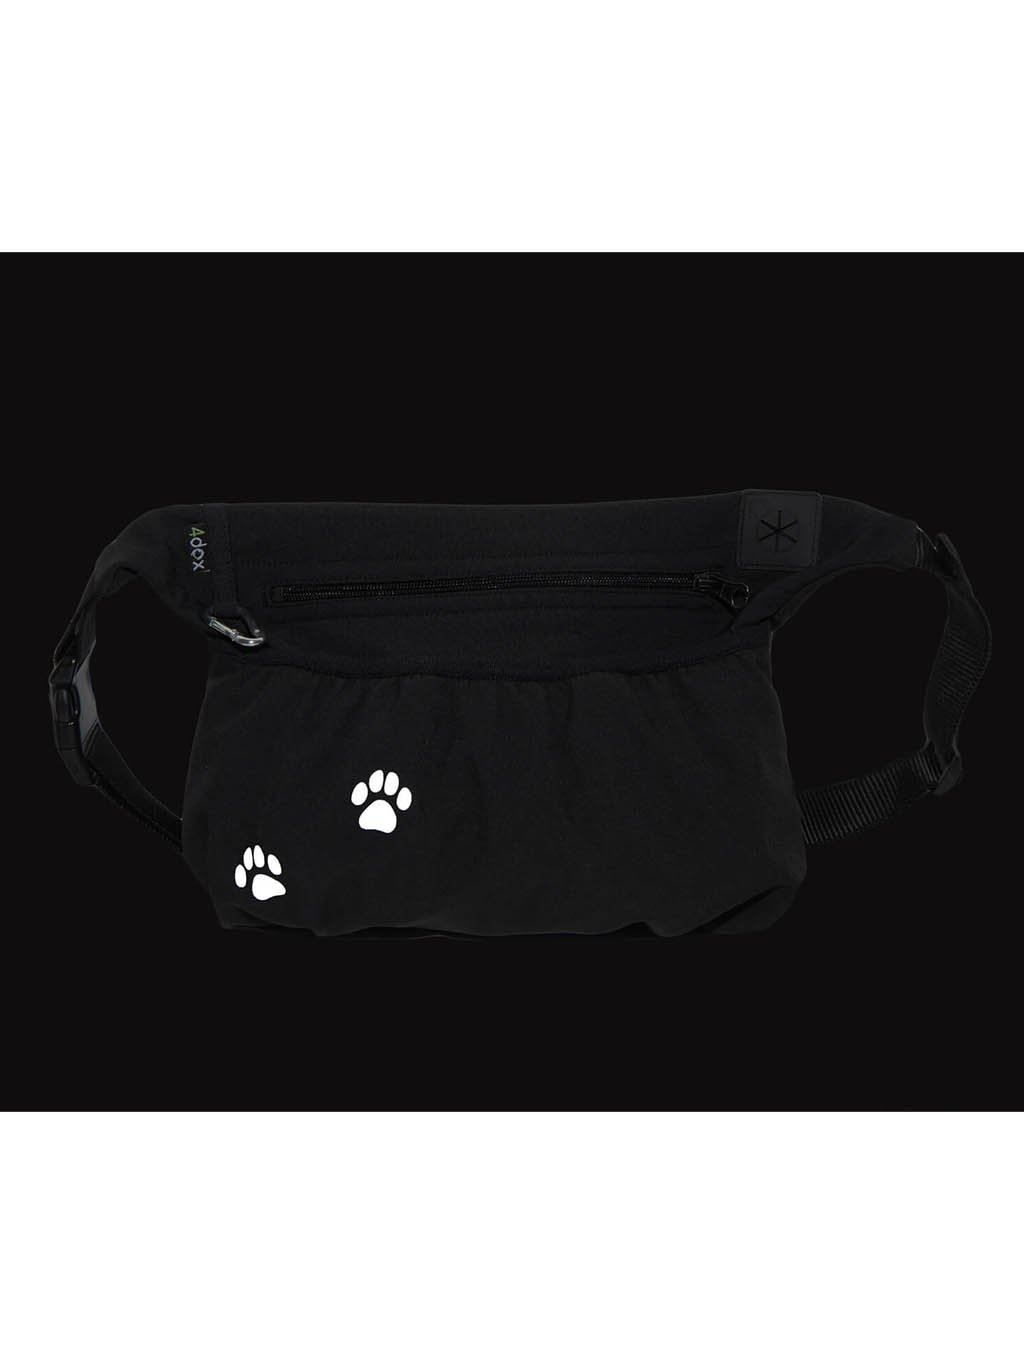 Dog training treat pouch XL black REFLEXIVE PAW